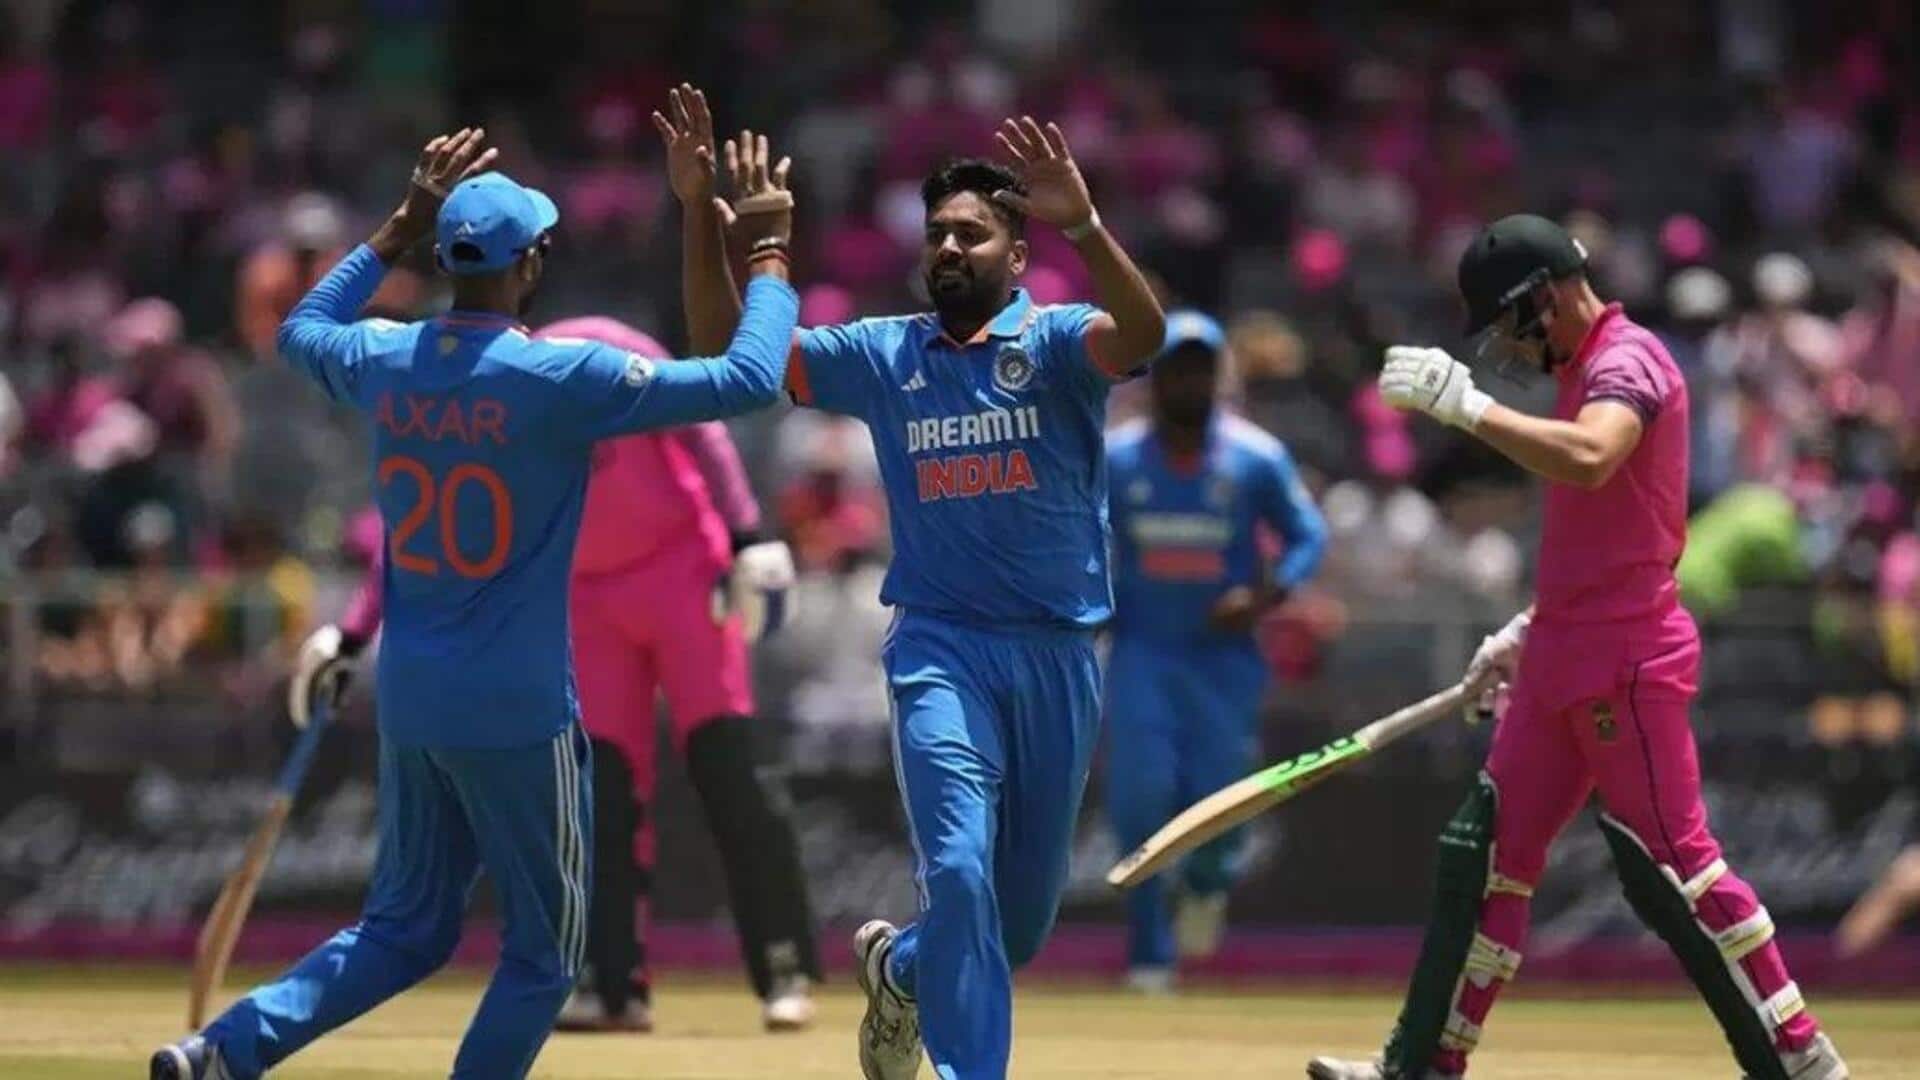 இந்தியா vs தென்னாப்பிரிக்கா 2வது ODI : முன்னோட்டம் மற்றும் புள்ளிவிபரங்கள்